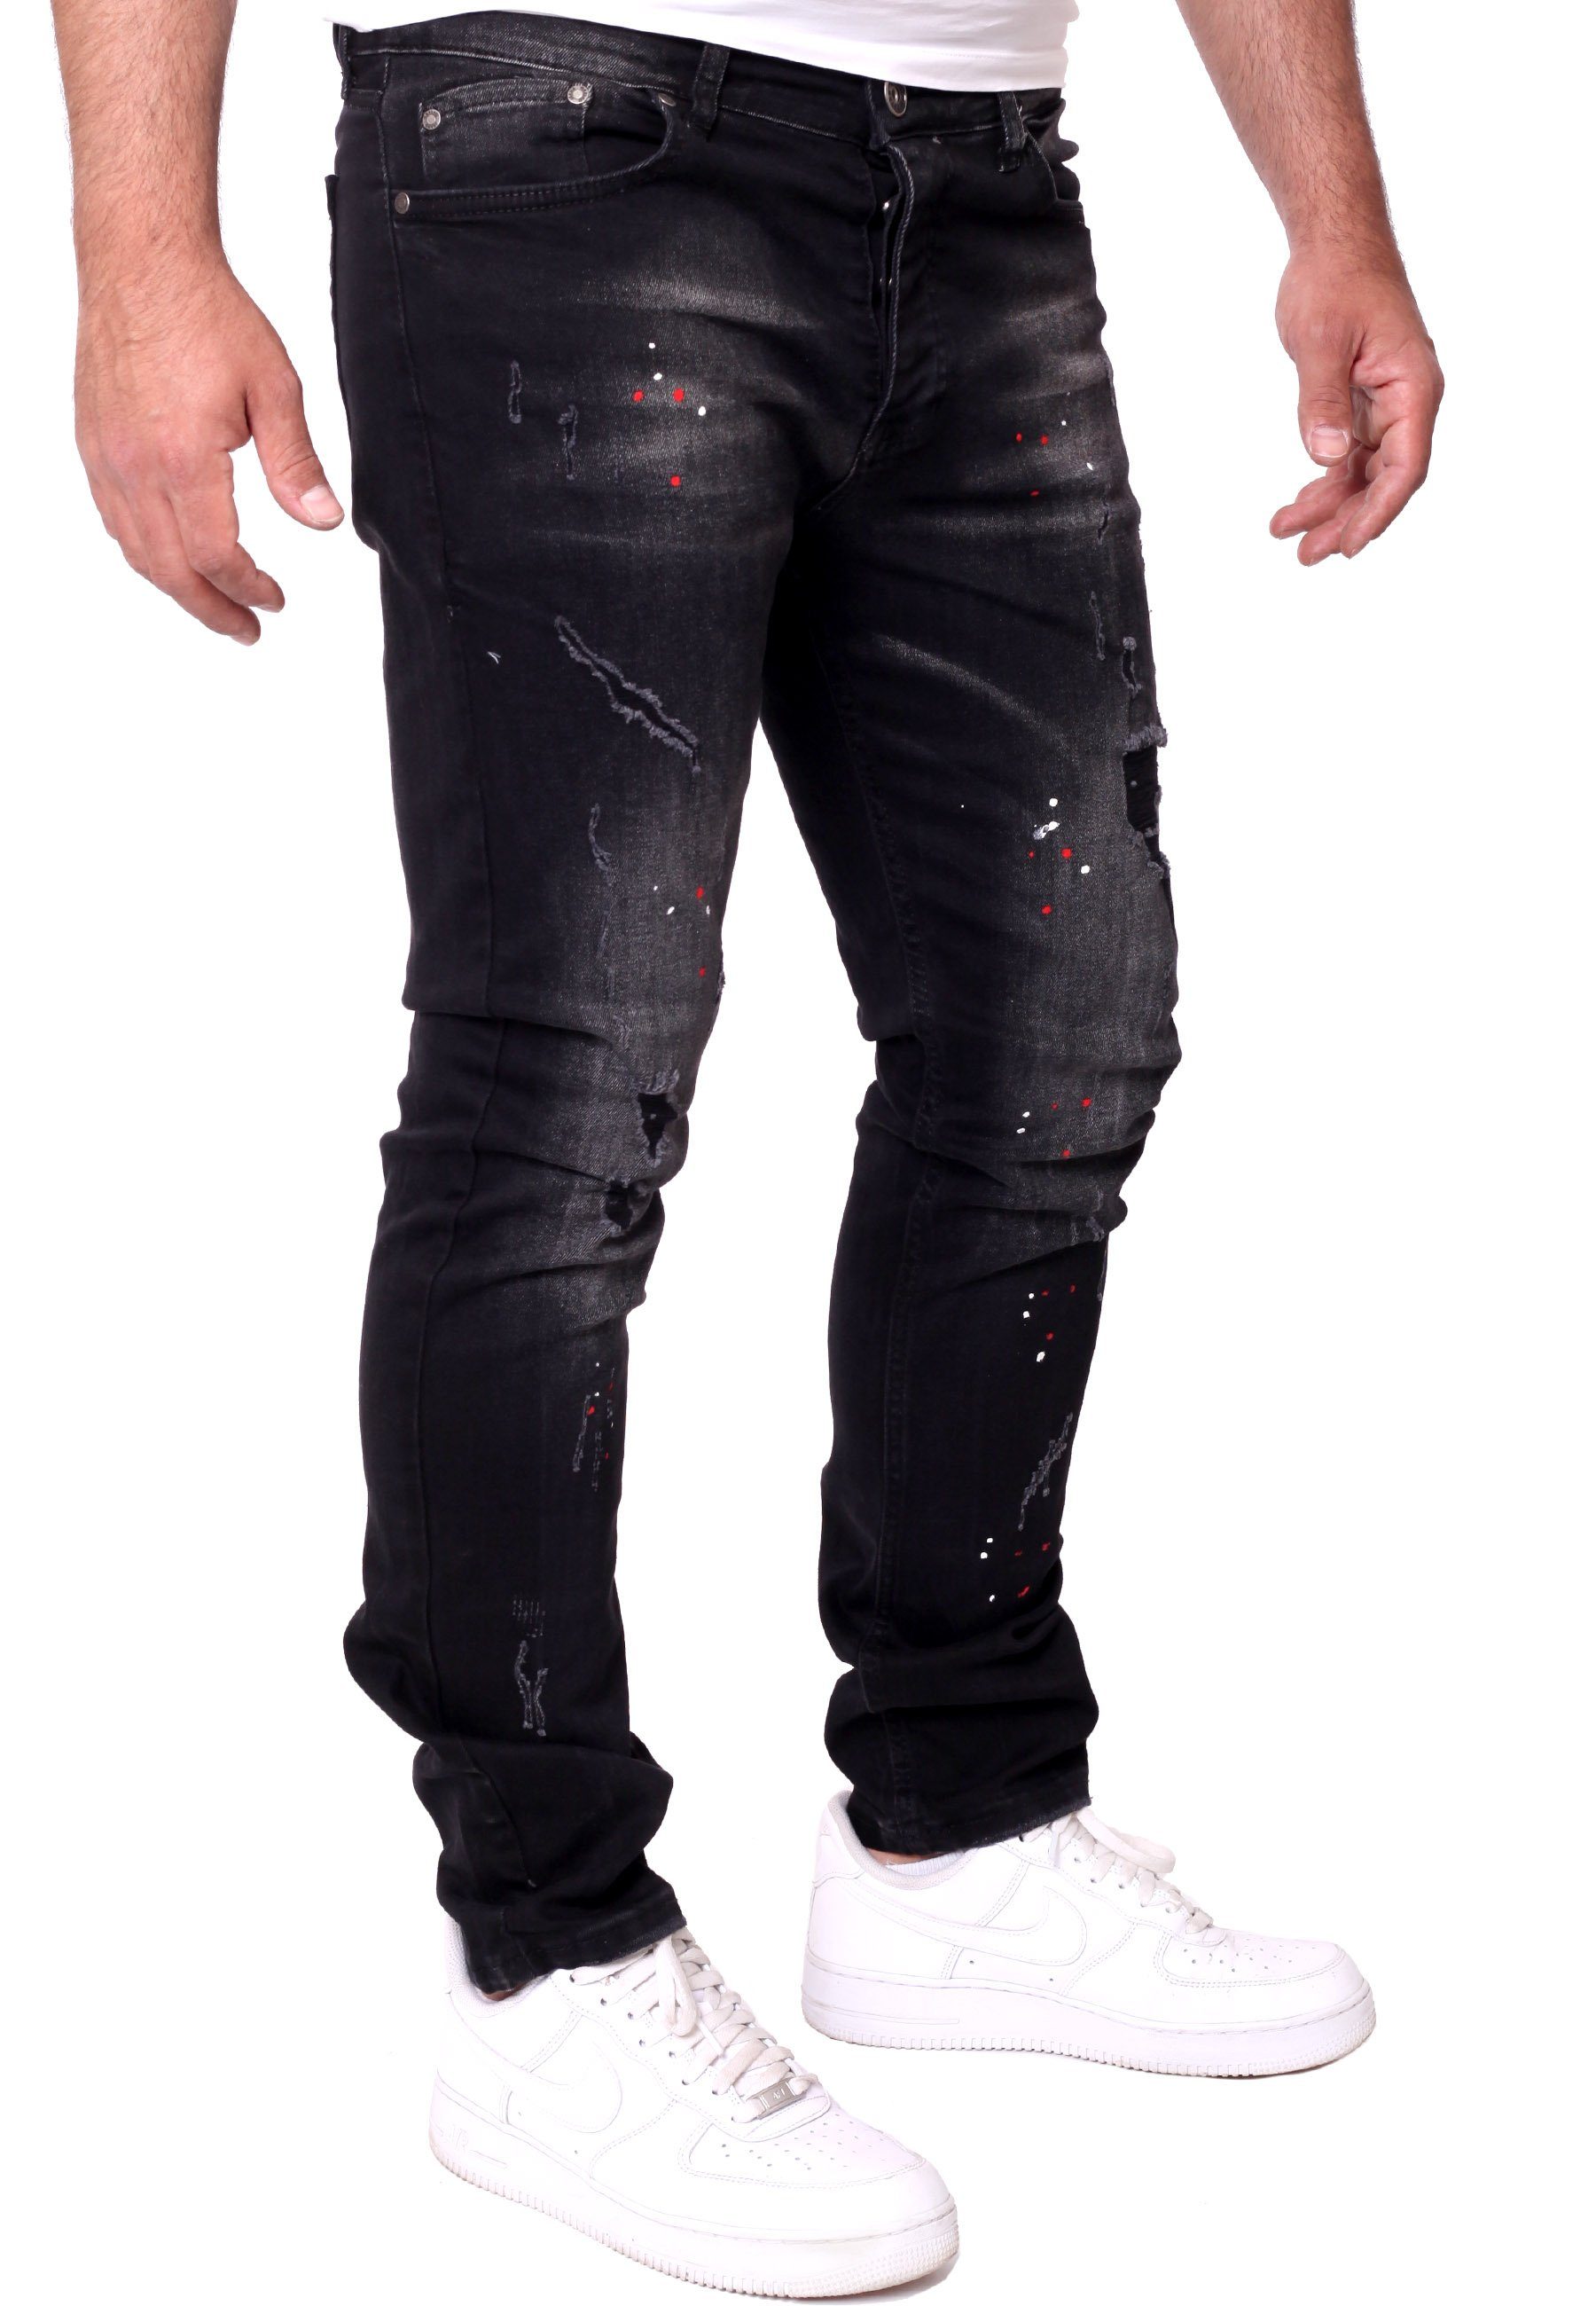 Reslad Destroyed-Jeans Reslad Destroyed Stretch Herren Fit Color-Splashes Männer-Hose Slim Jeanshose Denim schwarz Jeans Destroyed Jeanshose